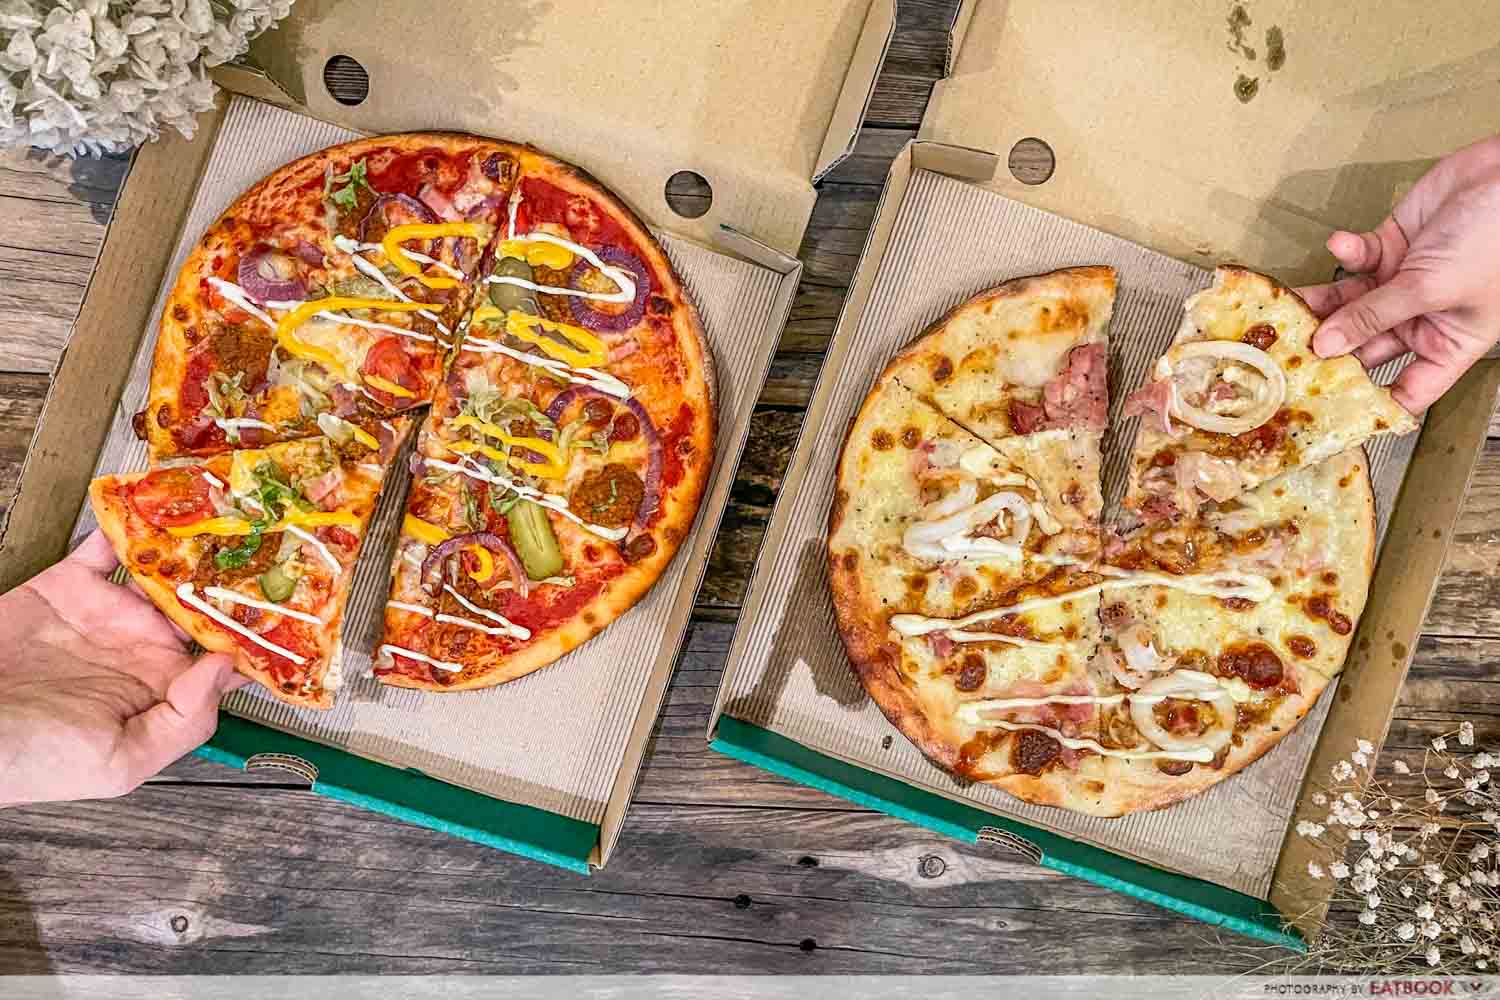 new restaurants june 2021 - pizzaexpress